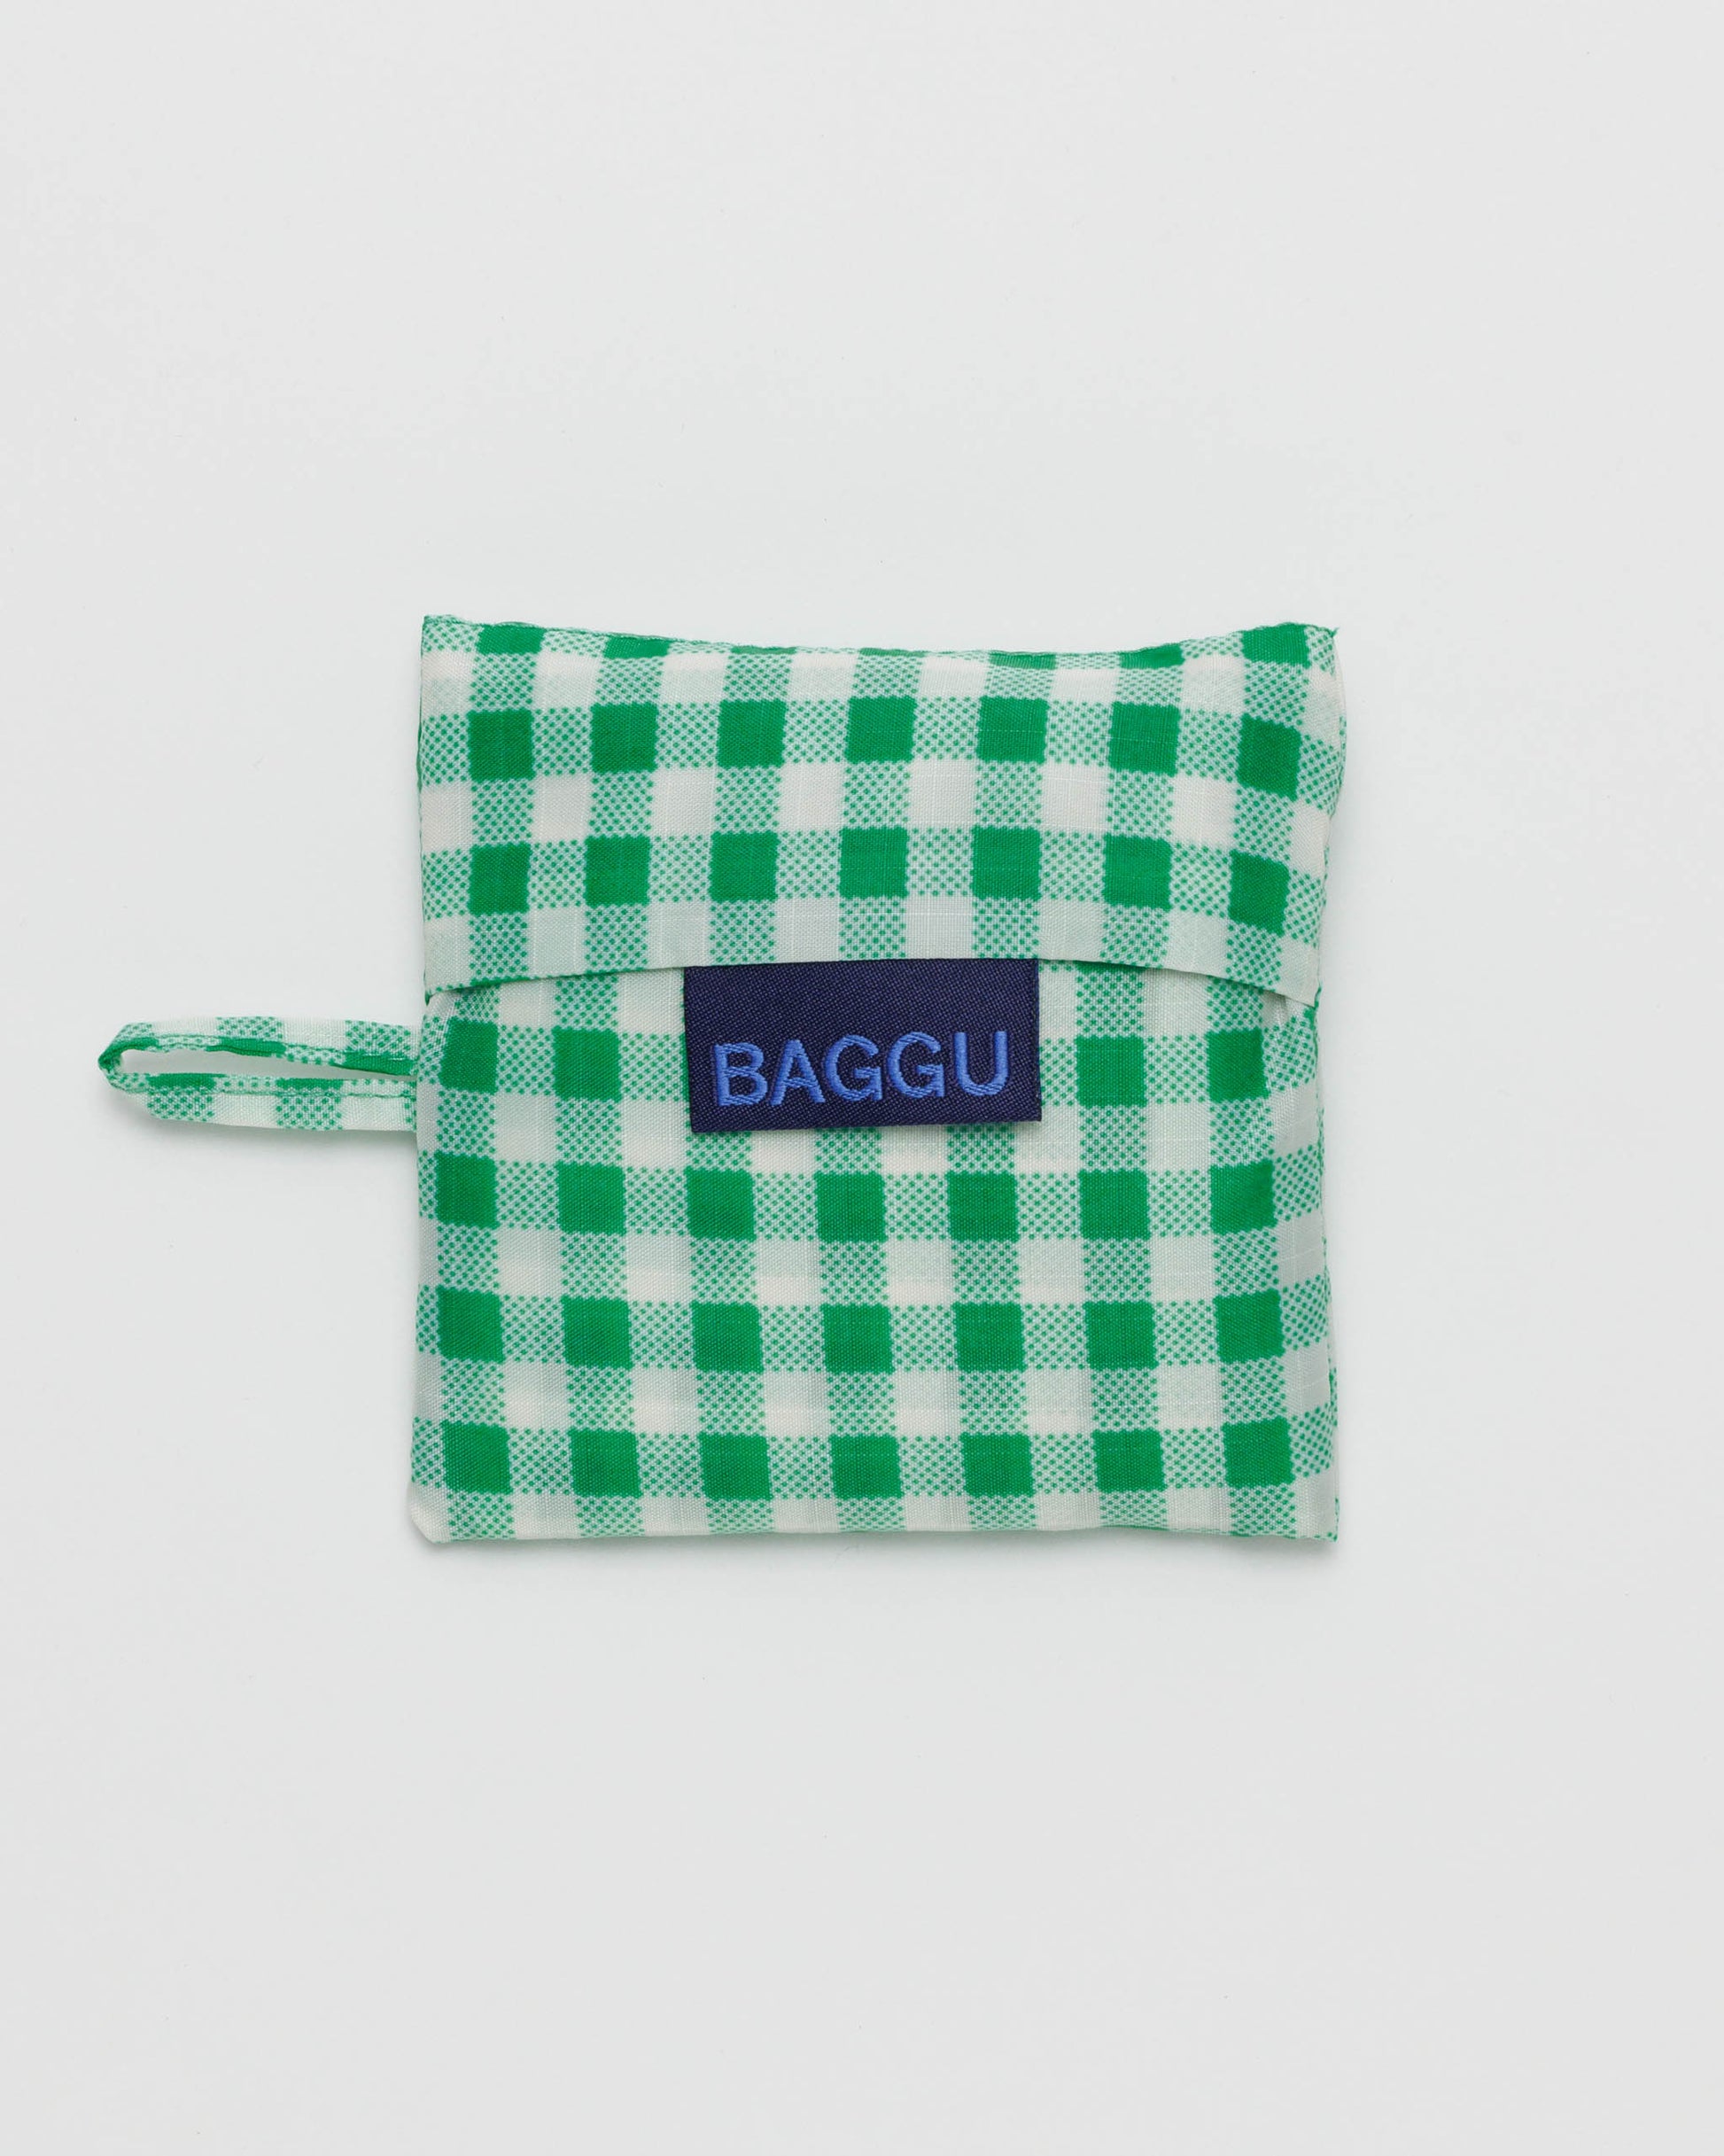 Baby BAGGU Reusable Bag - Green Gingham | RALLY RALLY Singapore